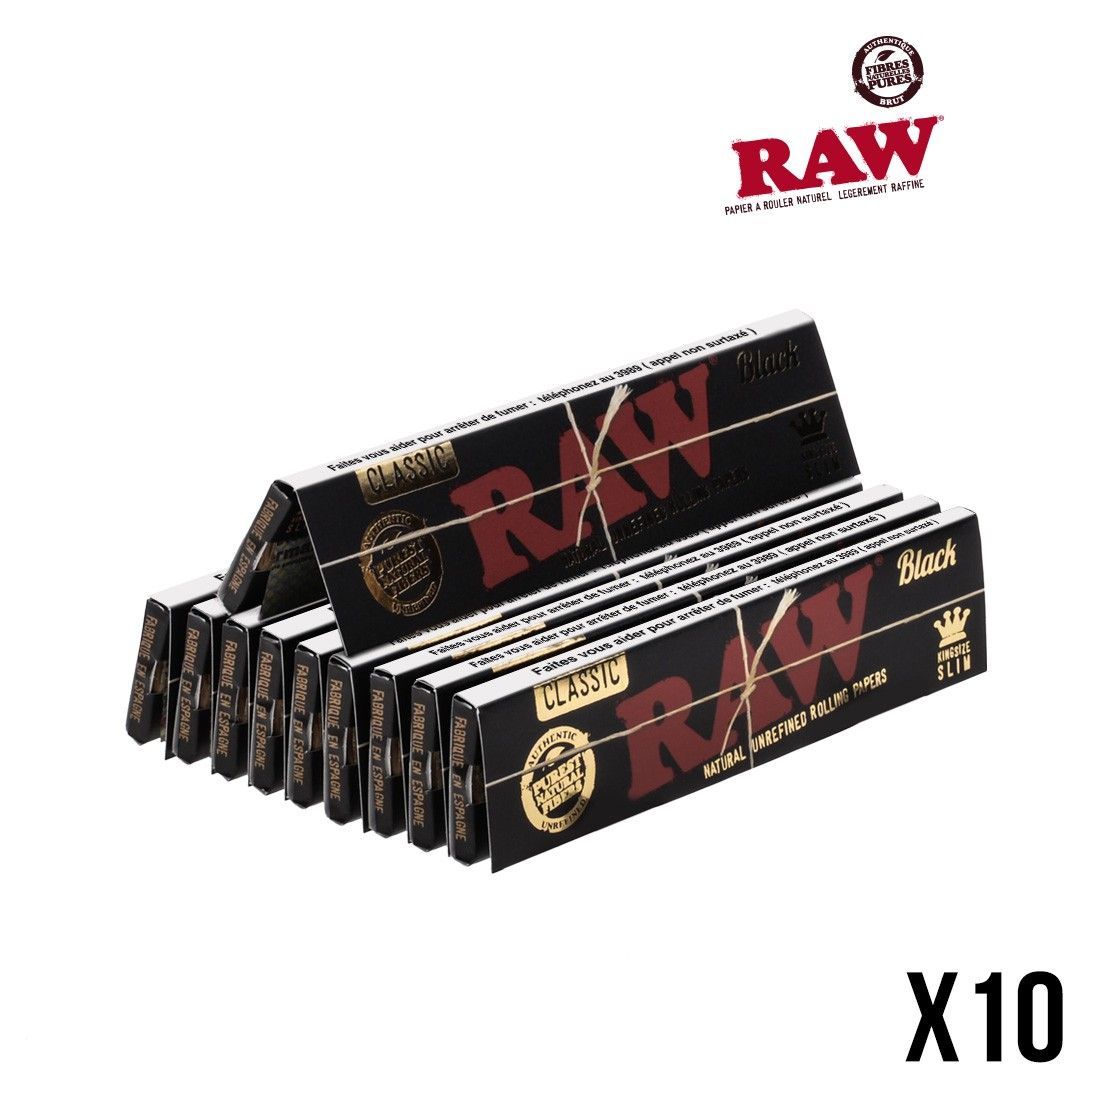 Feuilles à rouler Raw Black x50, dsiponibles sur S Factory !